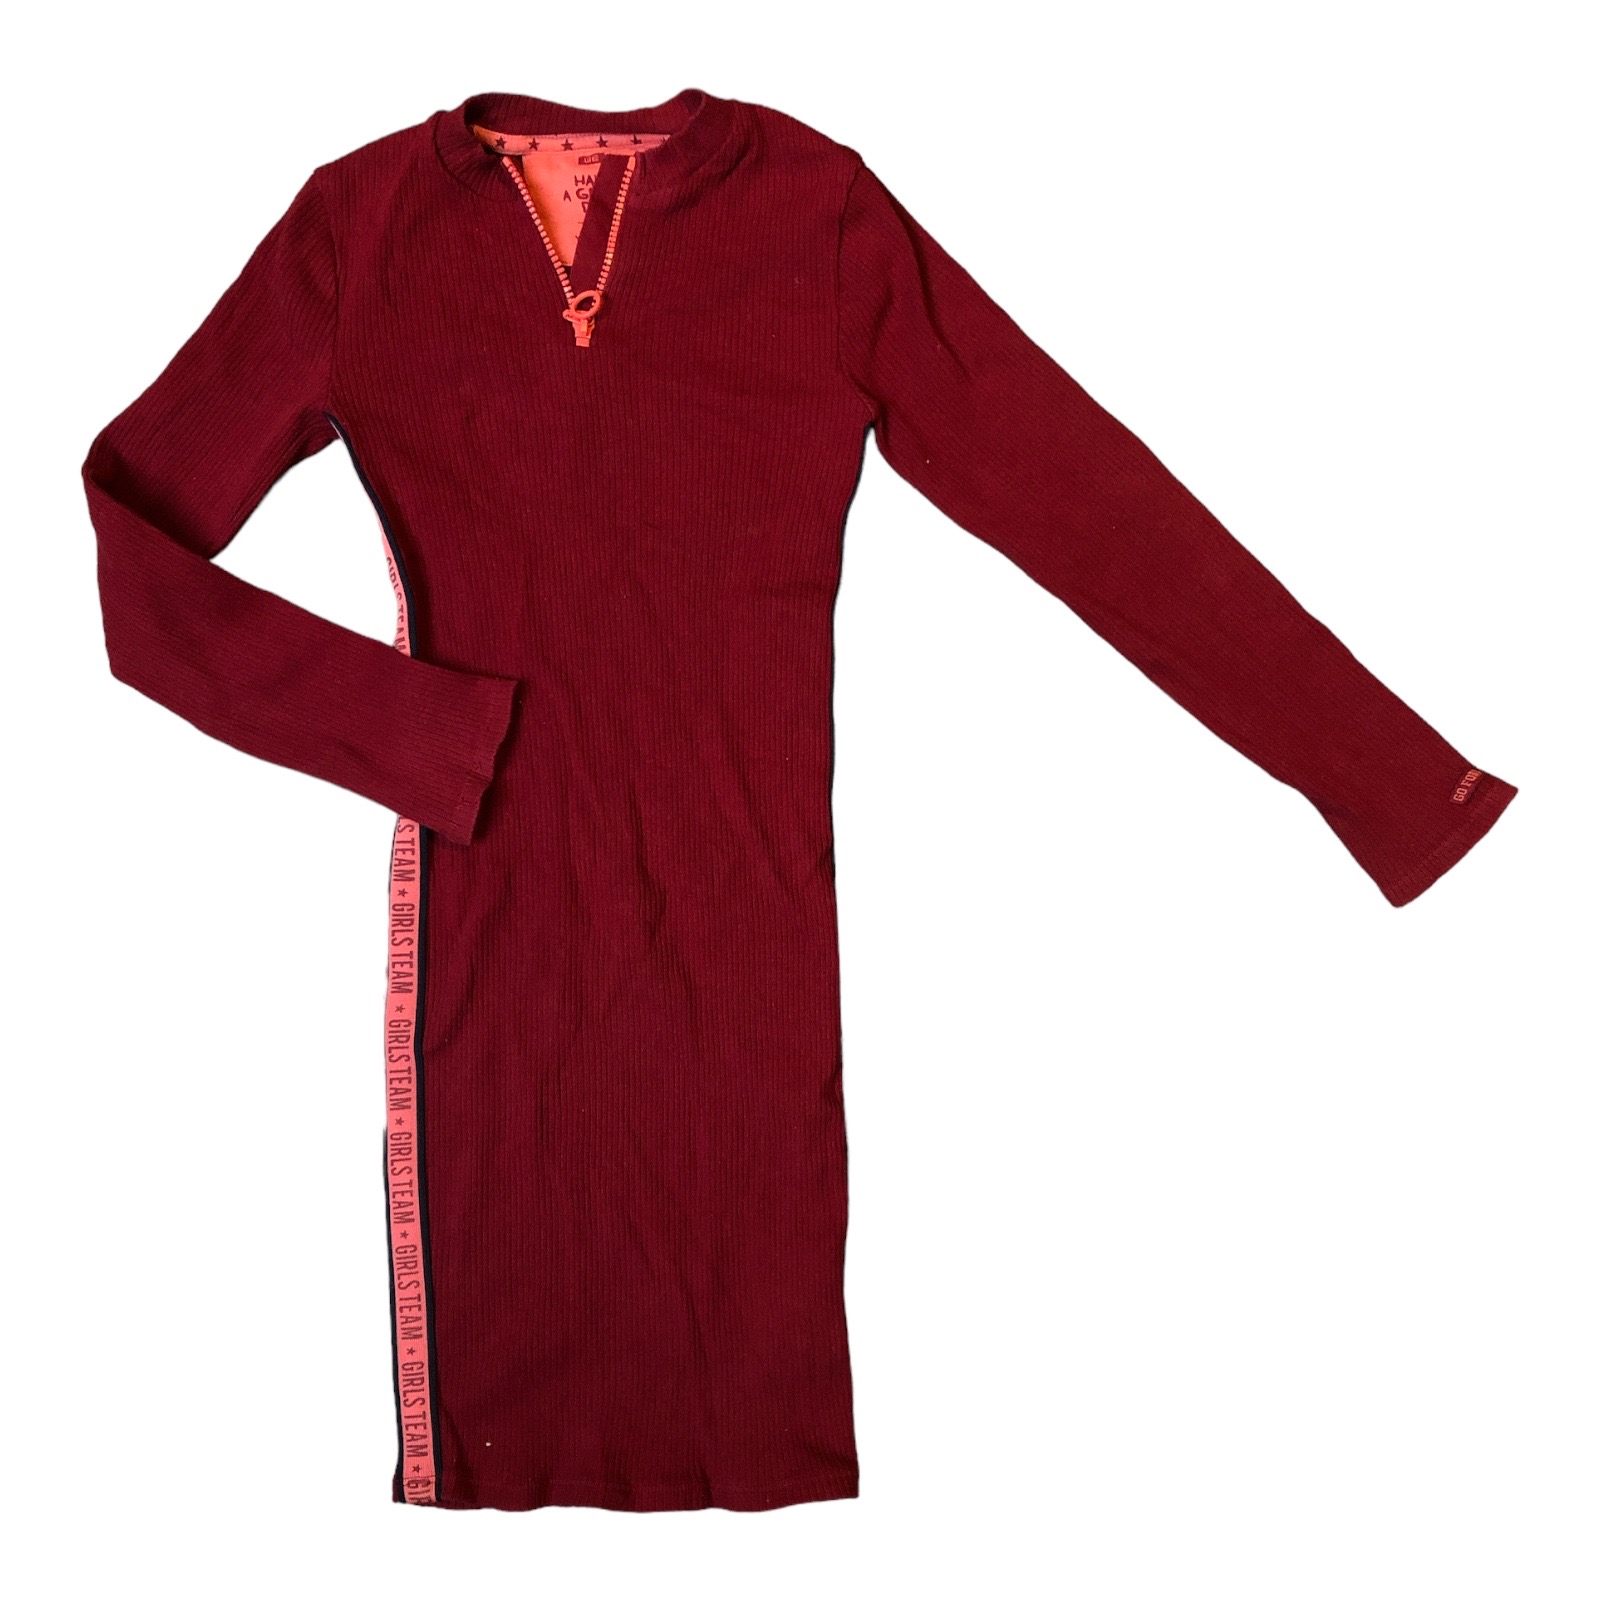 Leeg de prullenbak Inzichtelijk spectrum Preloved WE ♥ rode rib jurk maat 122/128 - www.pluys.nl